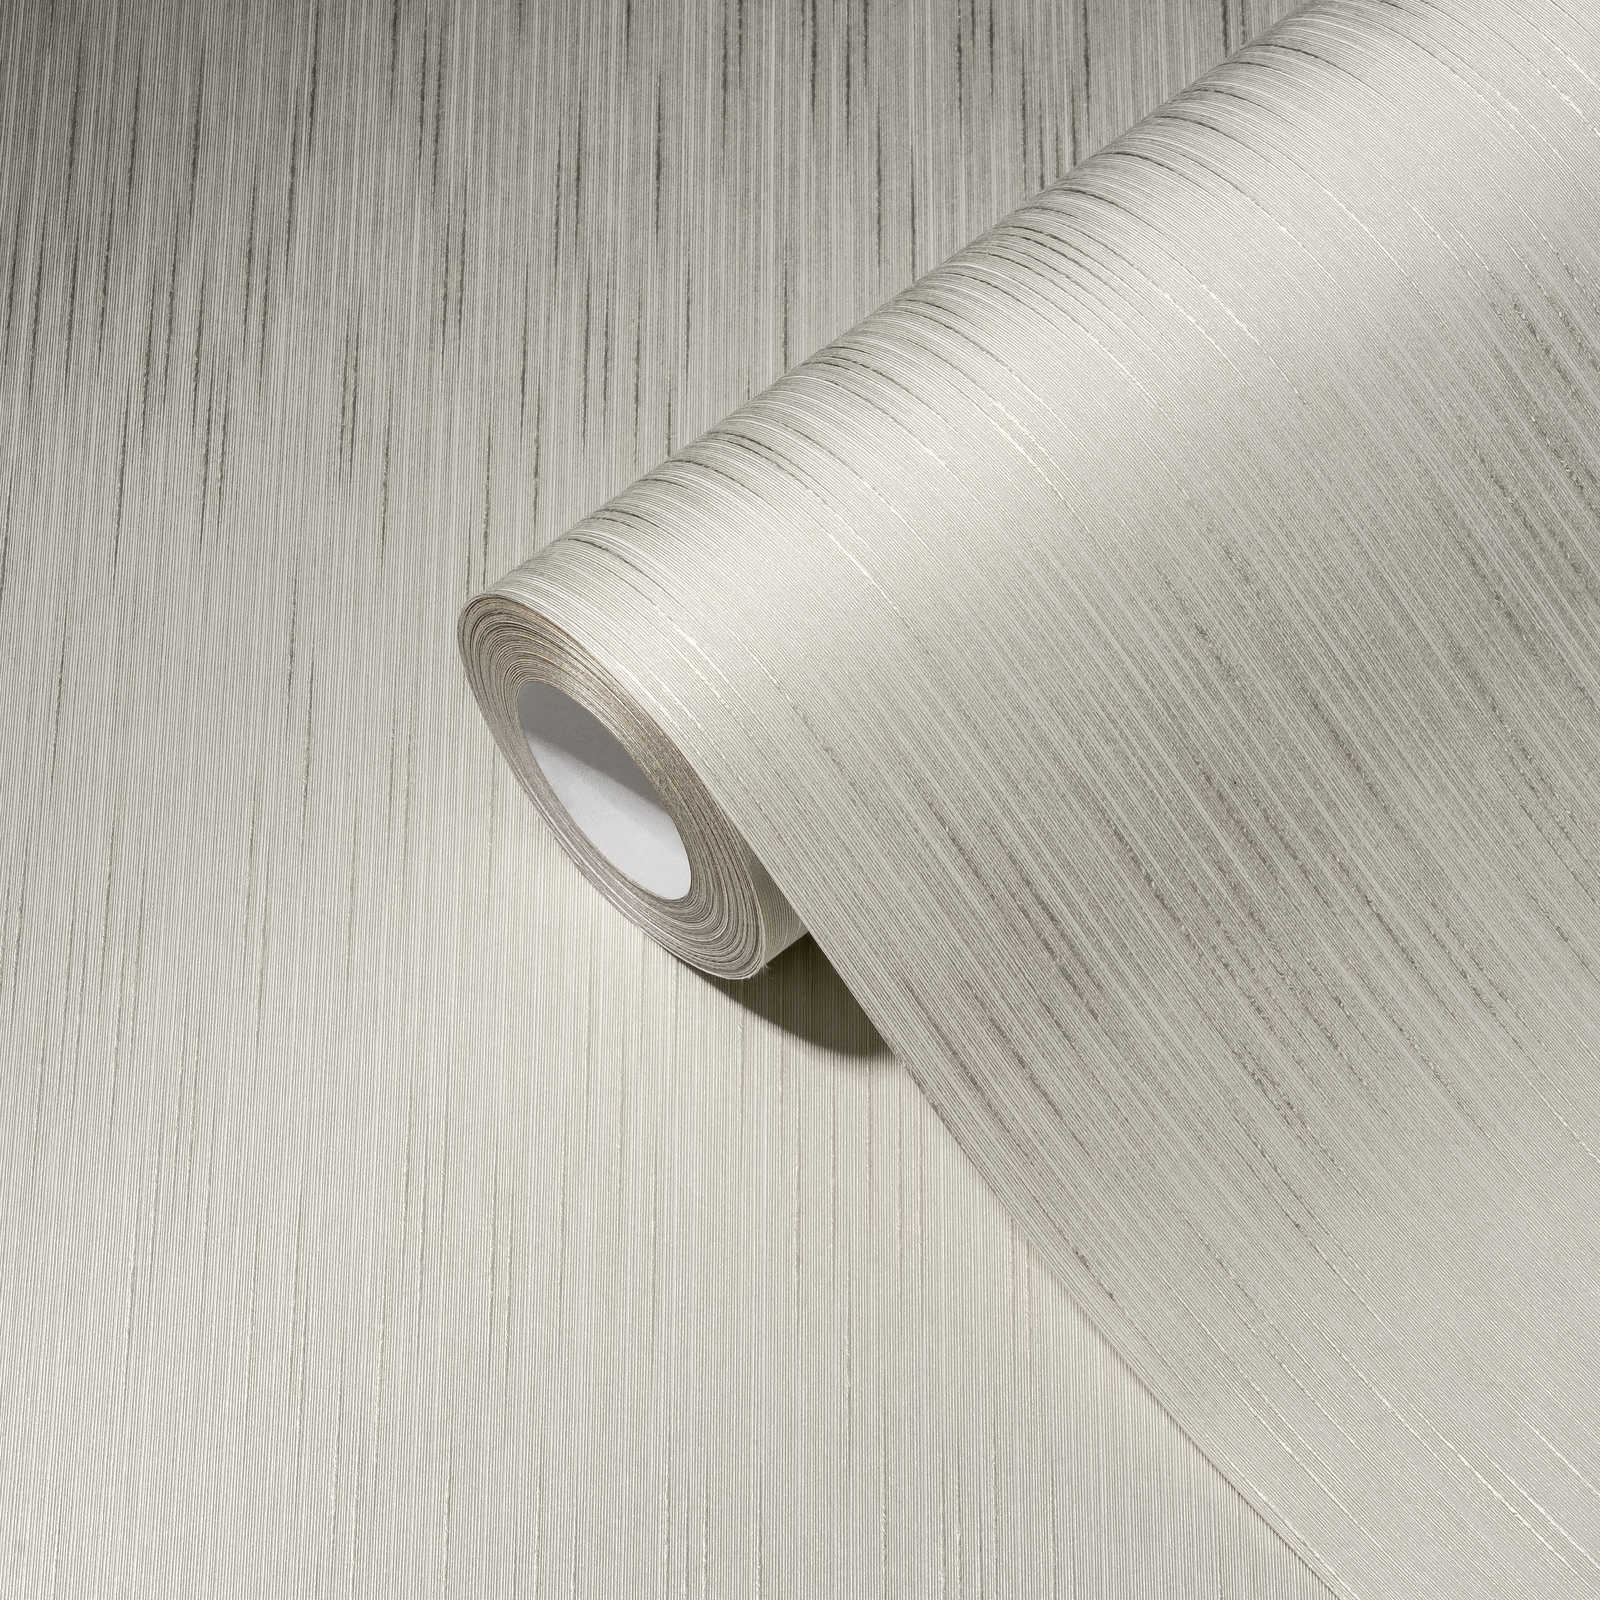             Papier peint satin gris clair avec structure textile & effet chiné
        